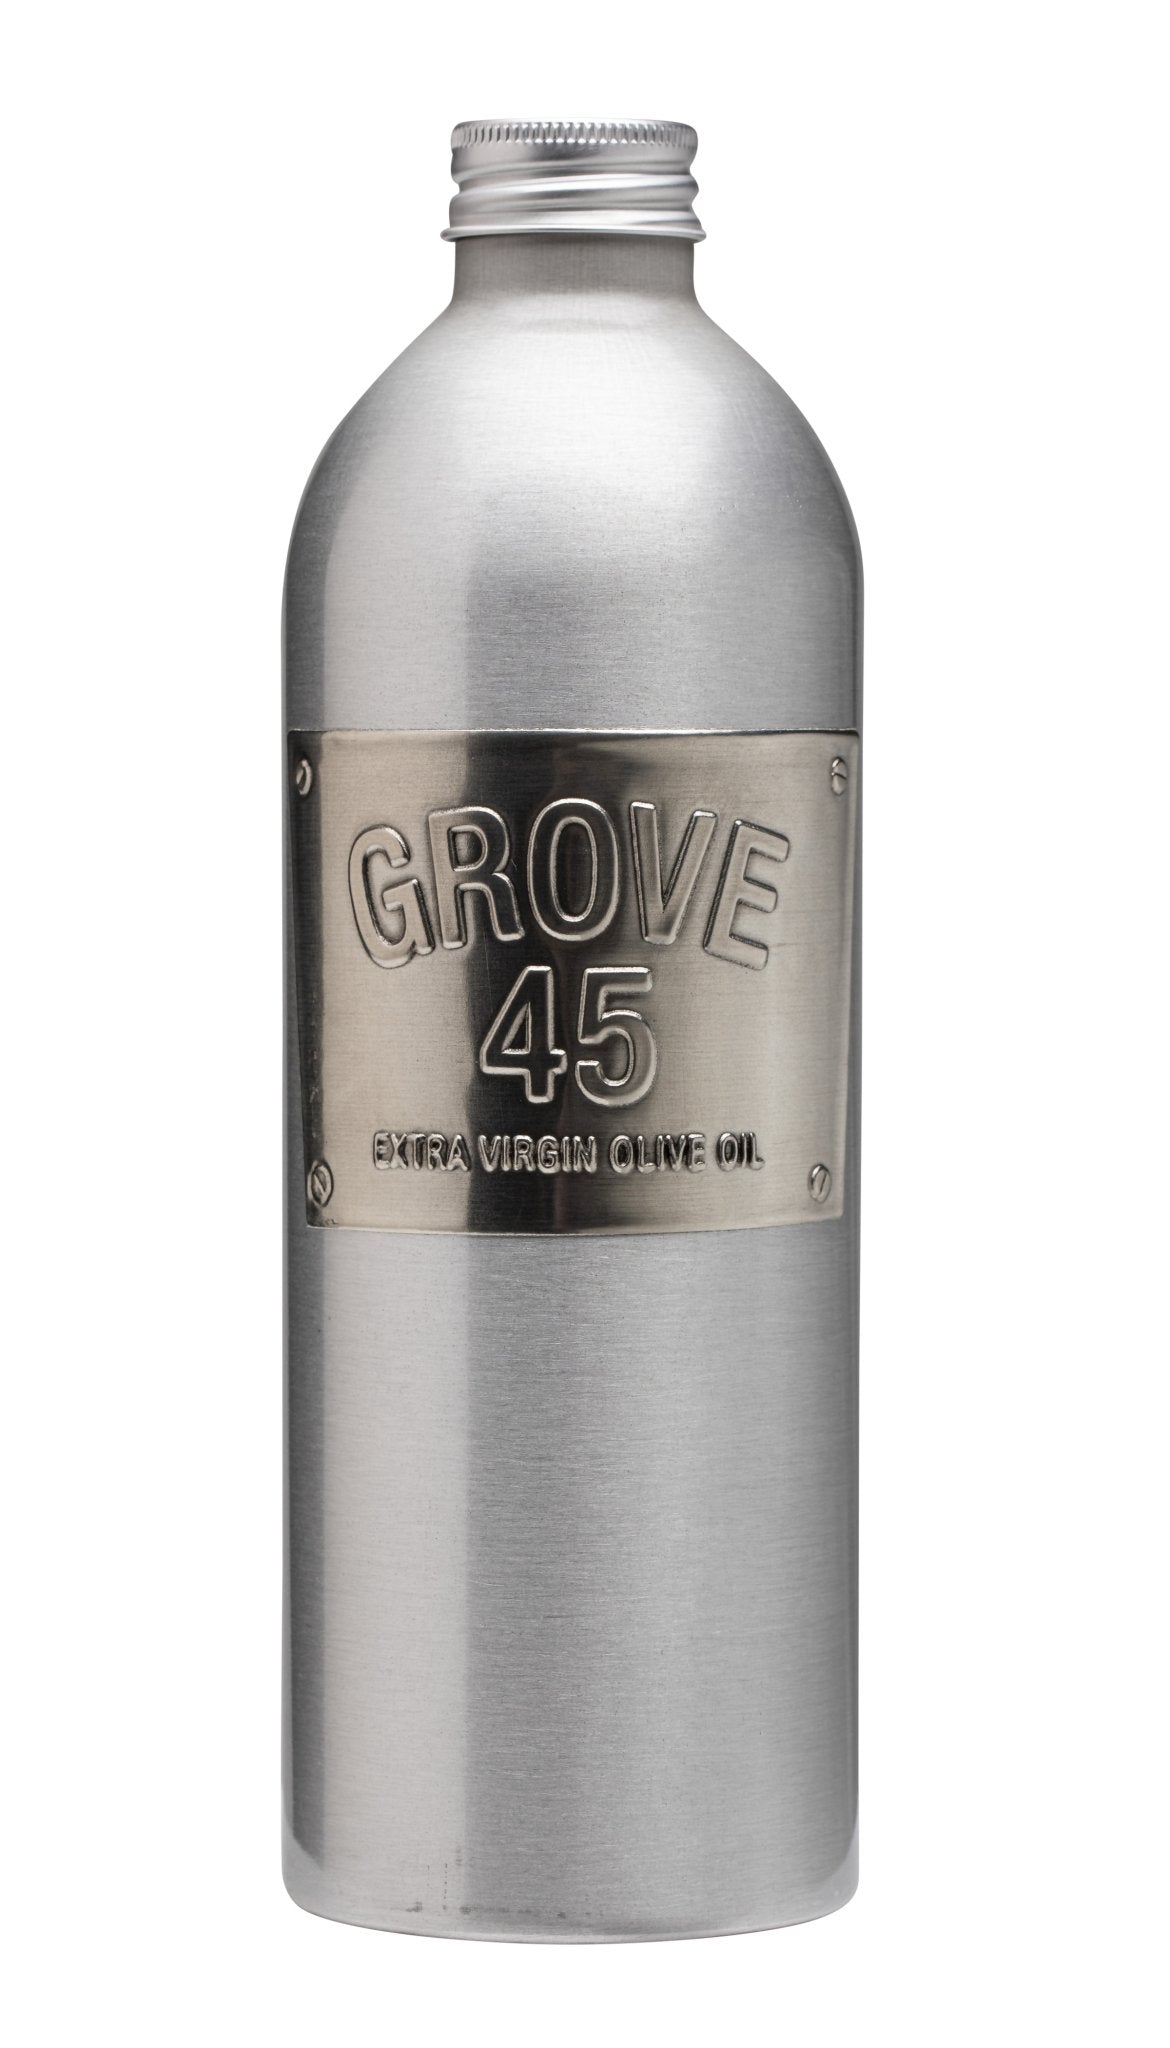 Grove 45 Extra Virgin Olive Oil bottles - 6 bottles x 500mL bottles by Farm2Me